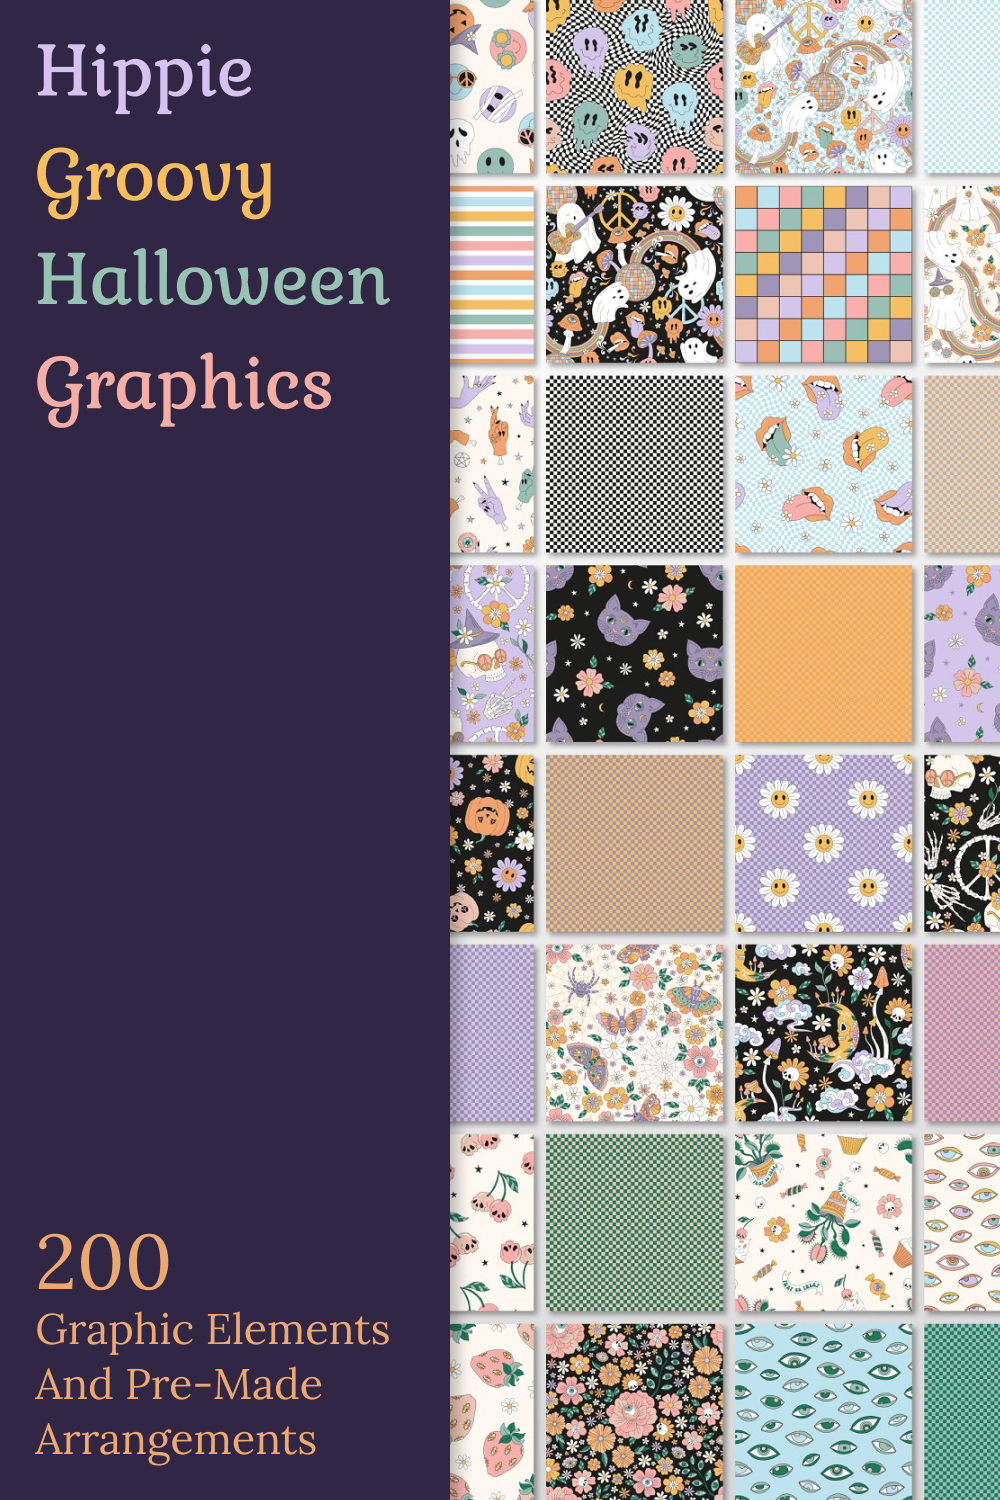 Hippie groovy halloween graphics of pinterest.